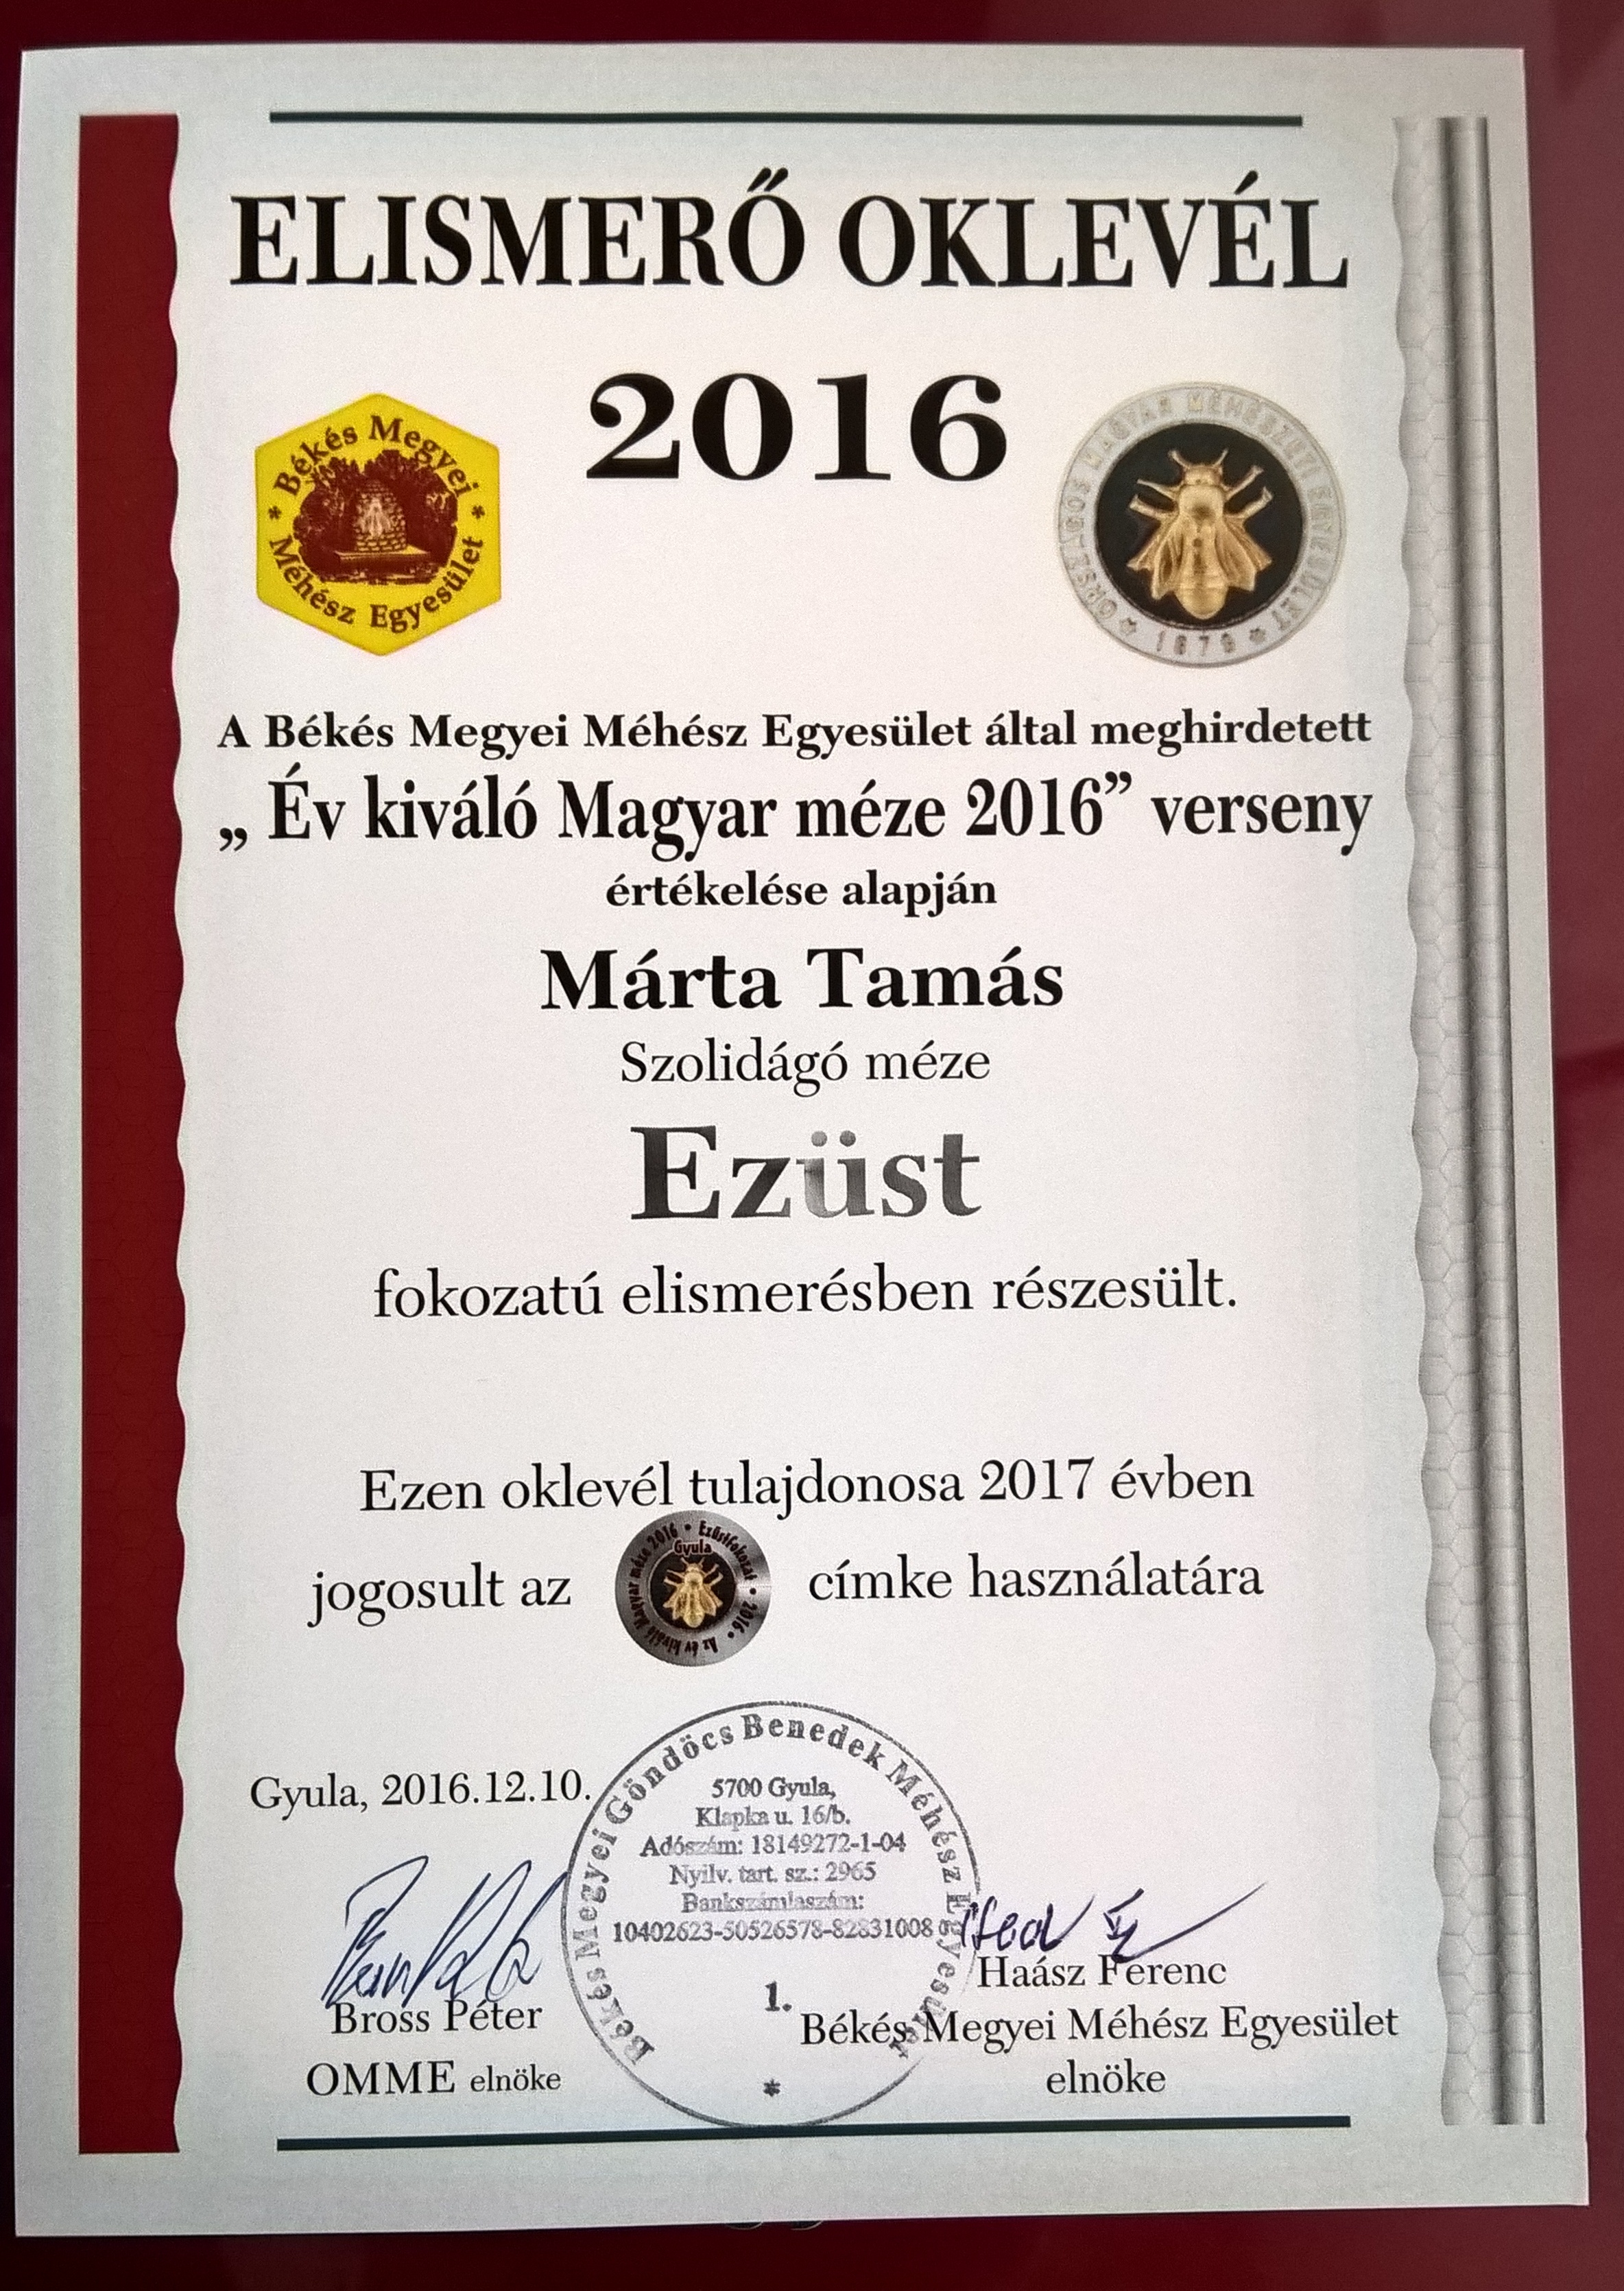 "Év Kiváló Magyar méze 2016"